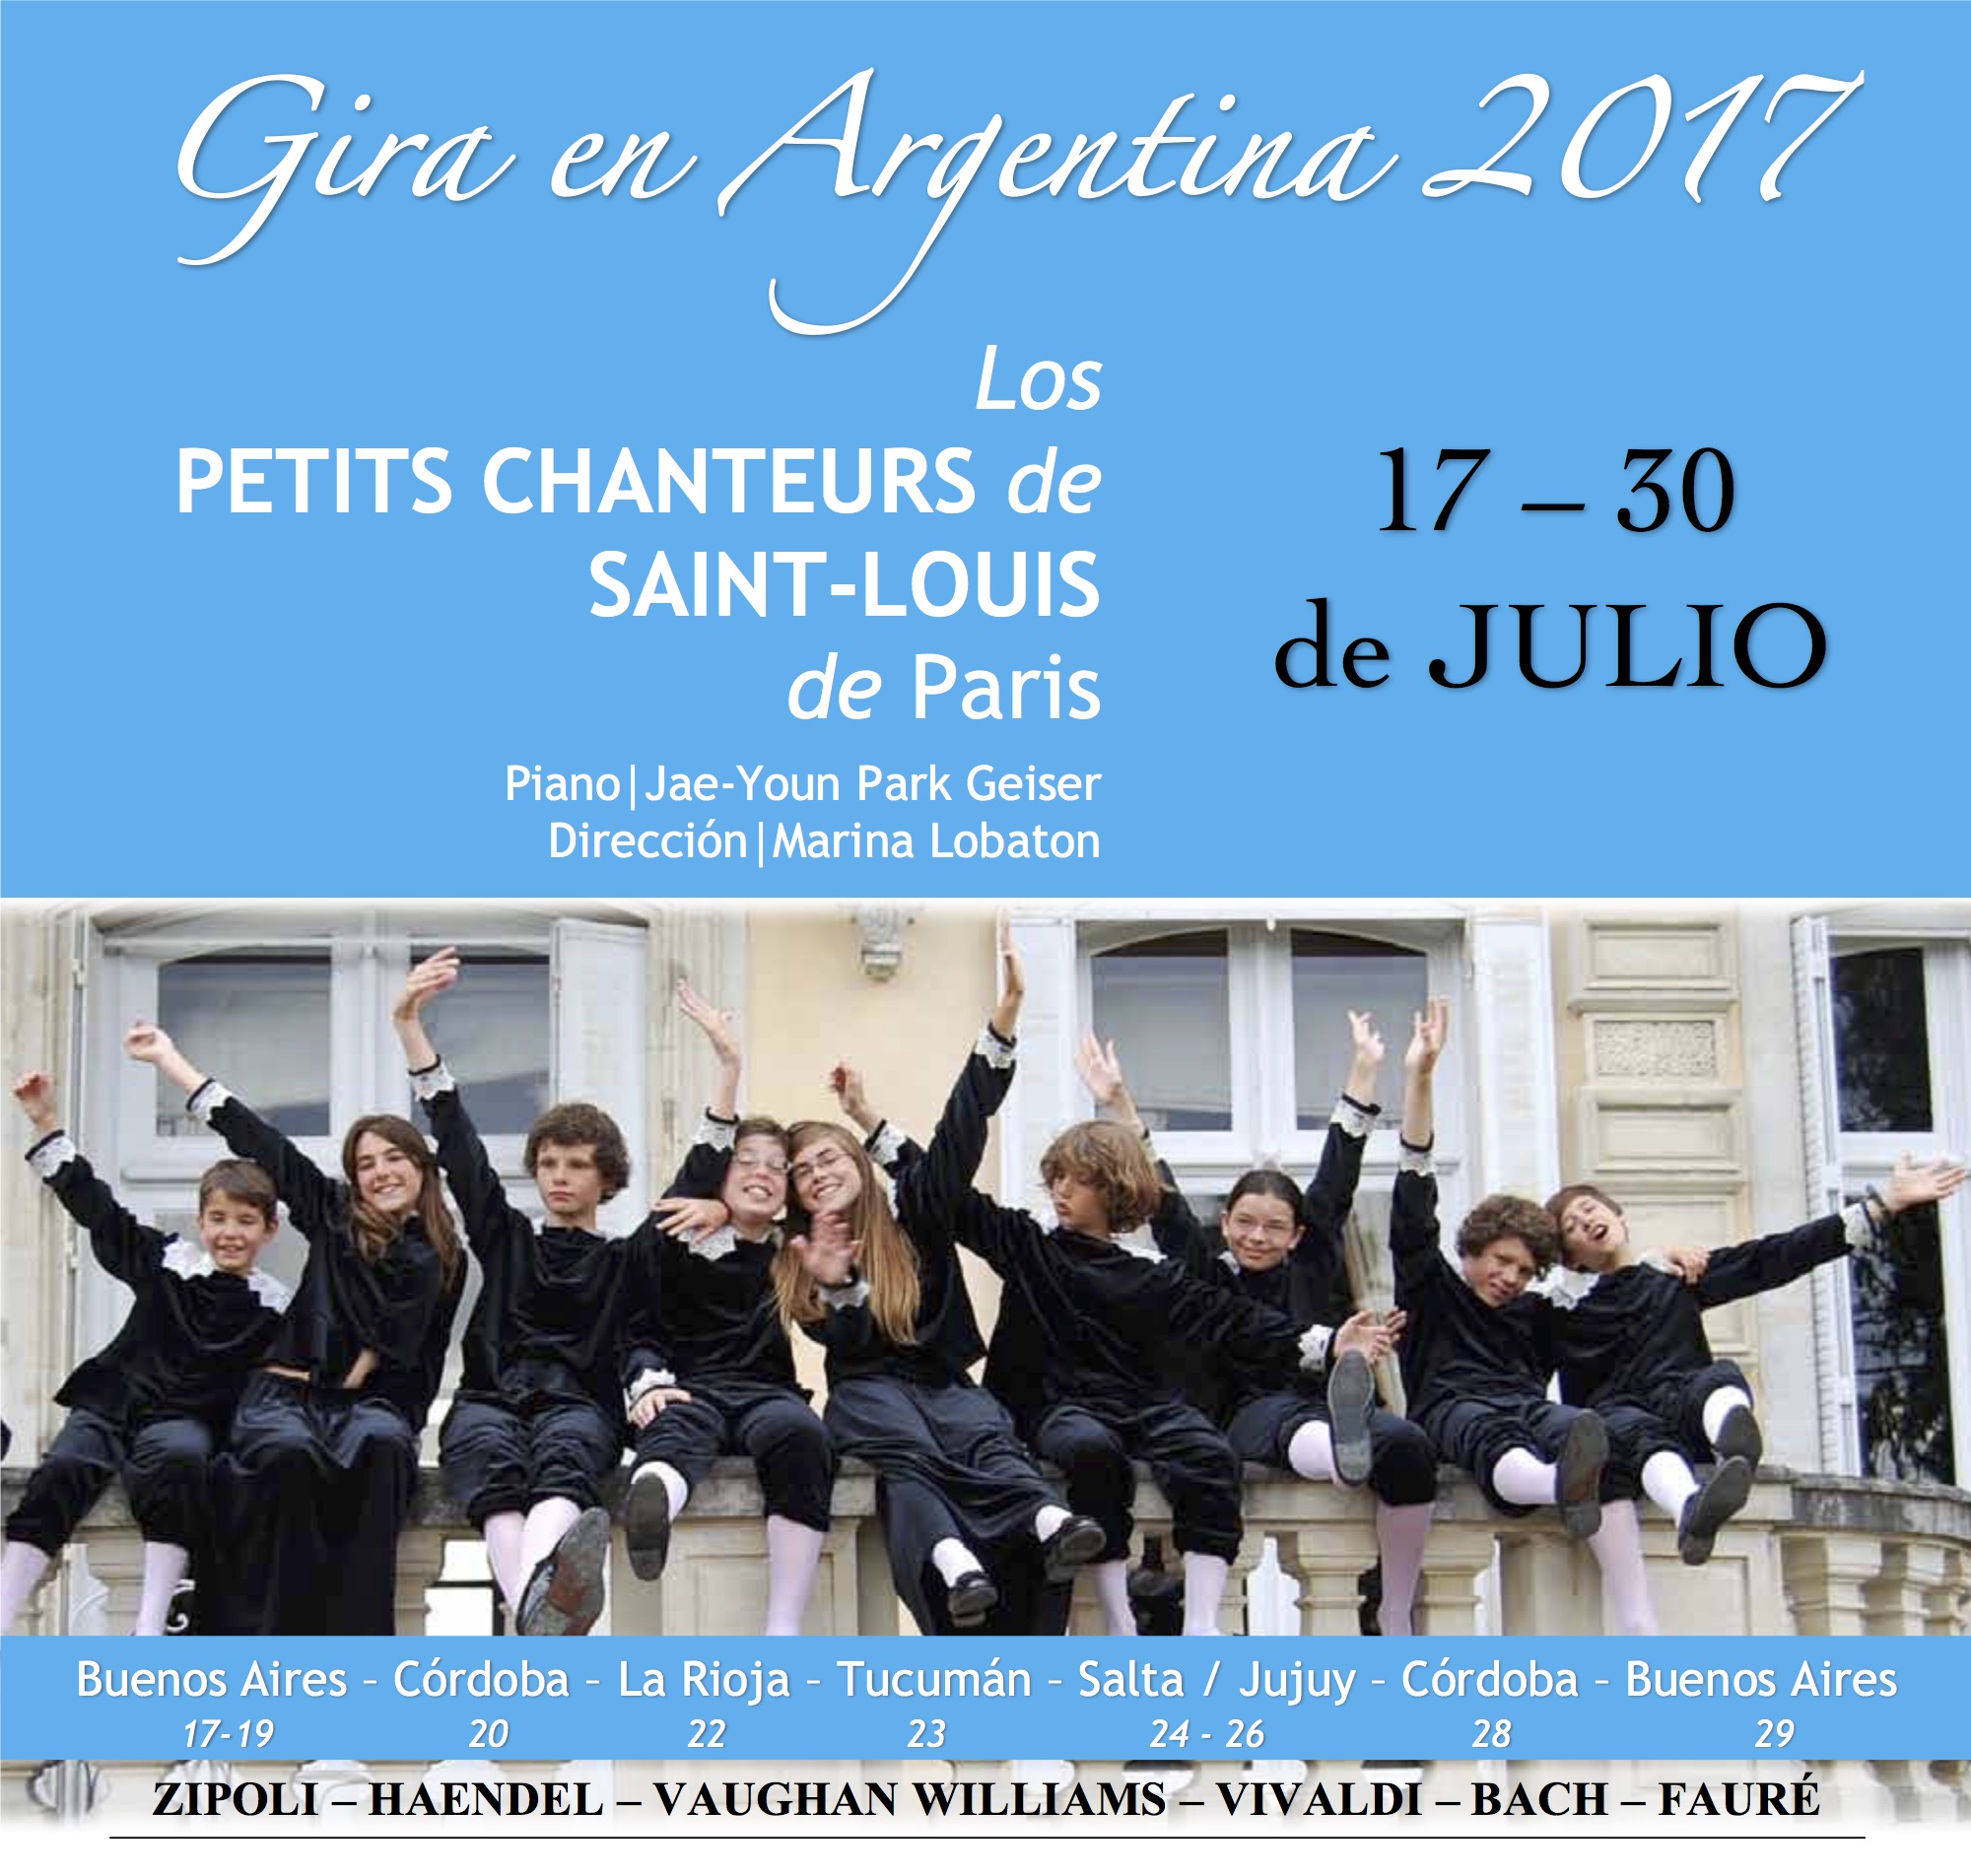 Affiche ARGENTINE 2017 web